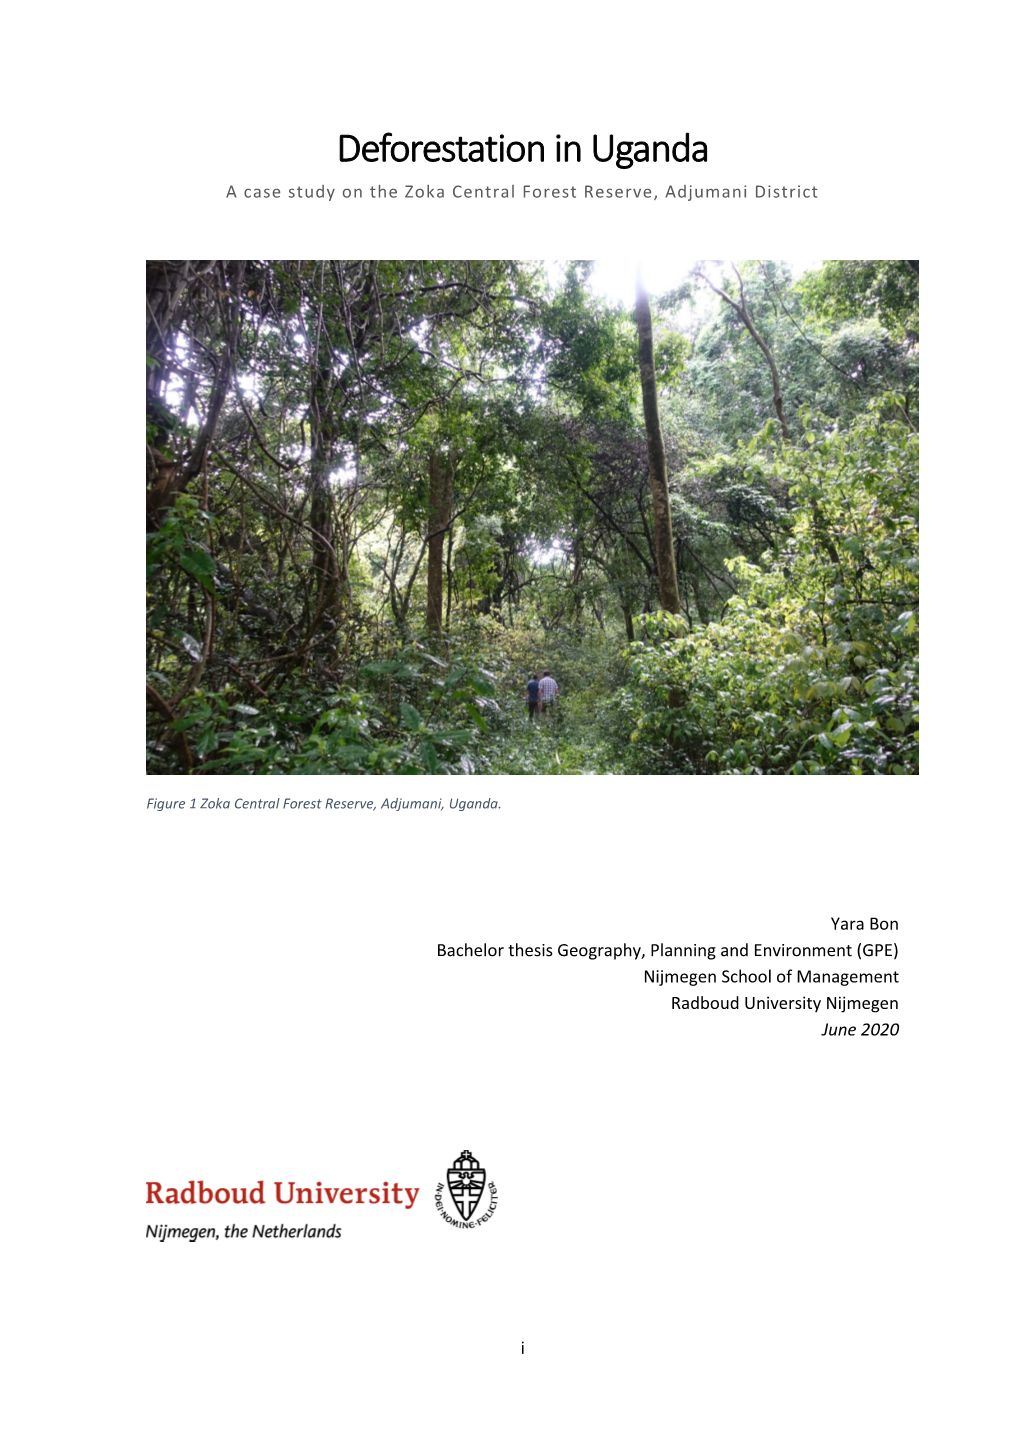 Deforestation in Uganda a Case Study on the Zoka Central Forest Reserve, Adjumani District